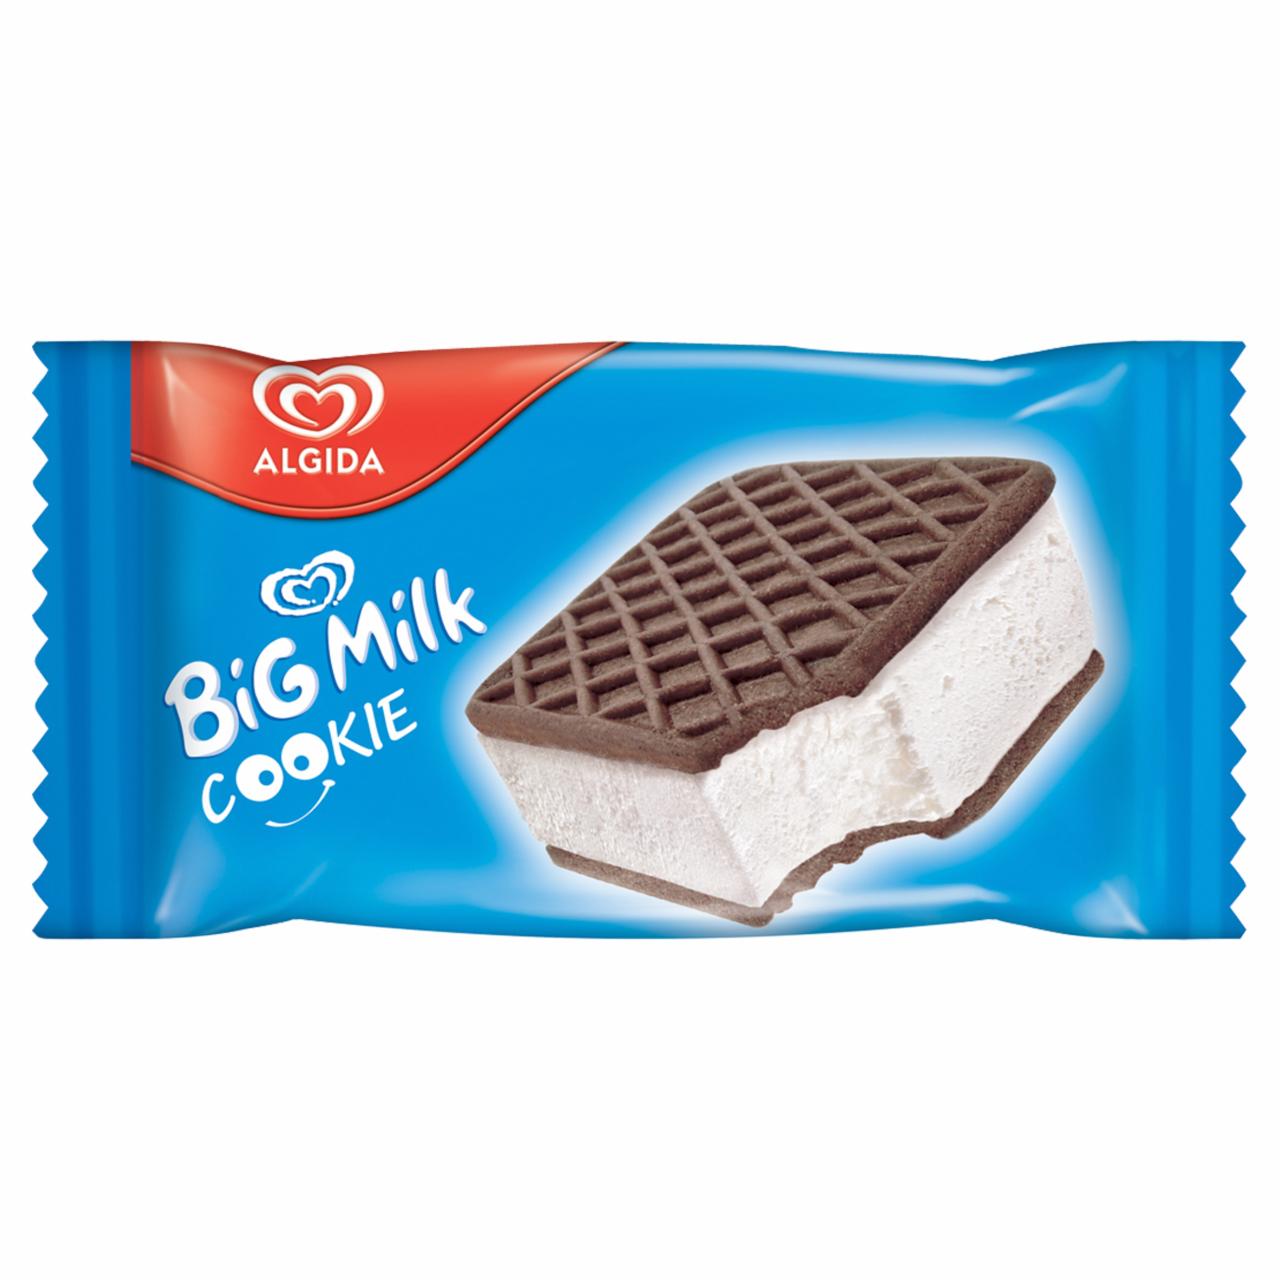 Zdjęcia - Algida Big Milk Cookie Lody 74 ml